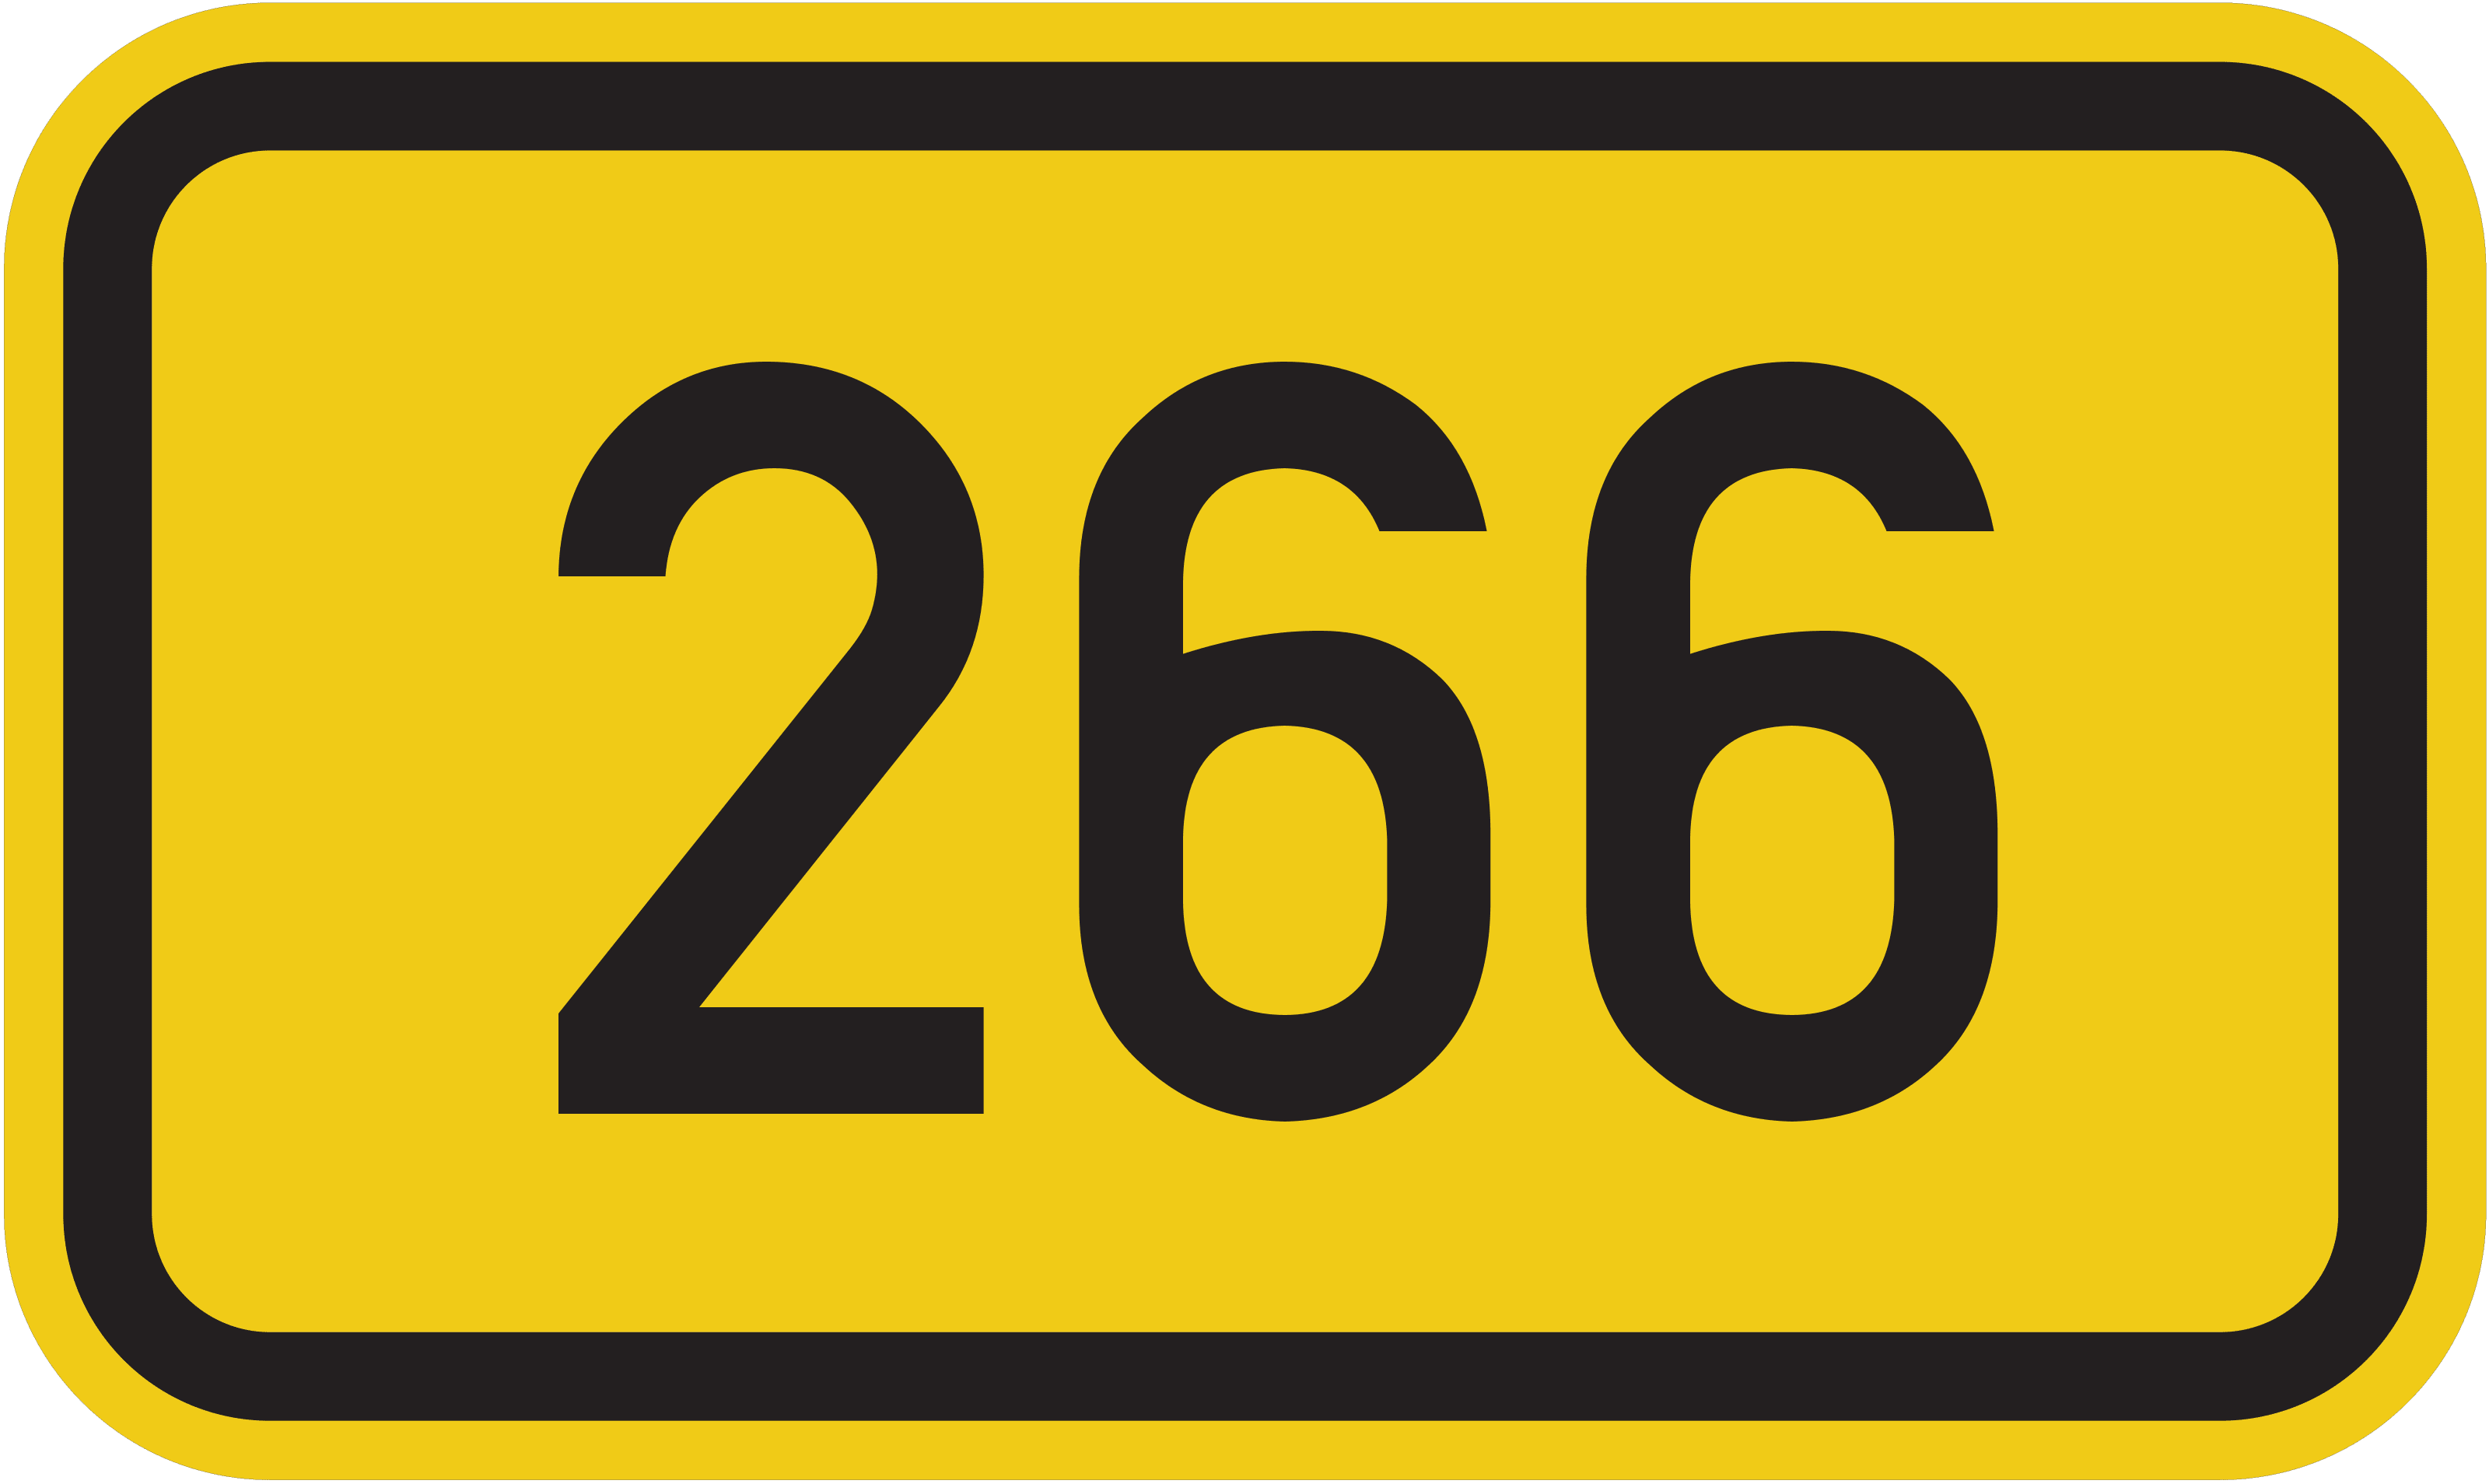 Bundesstraße B 266